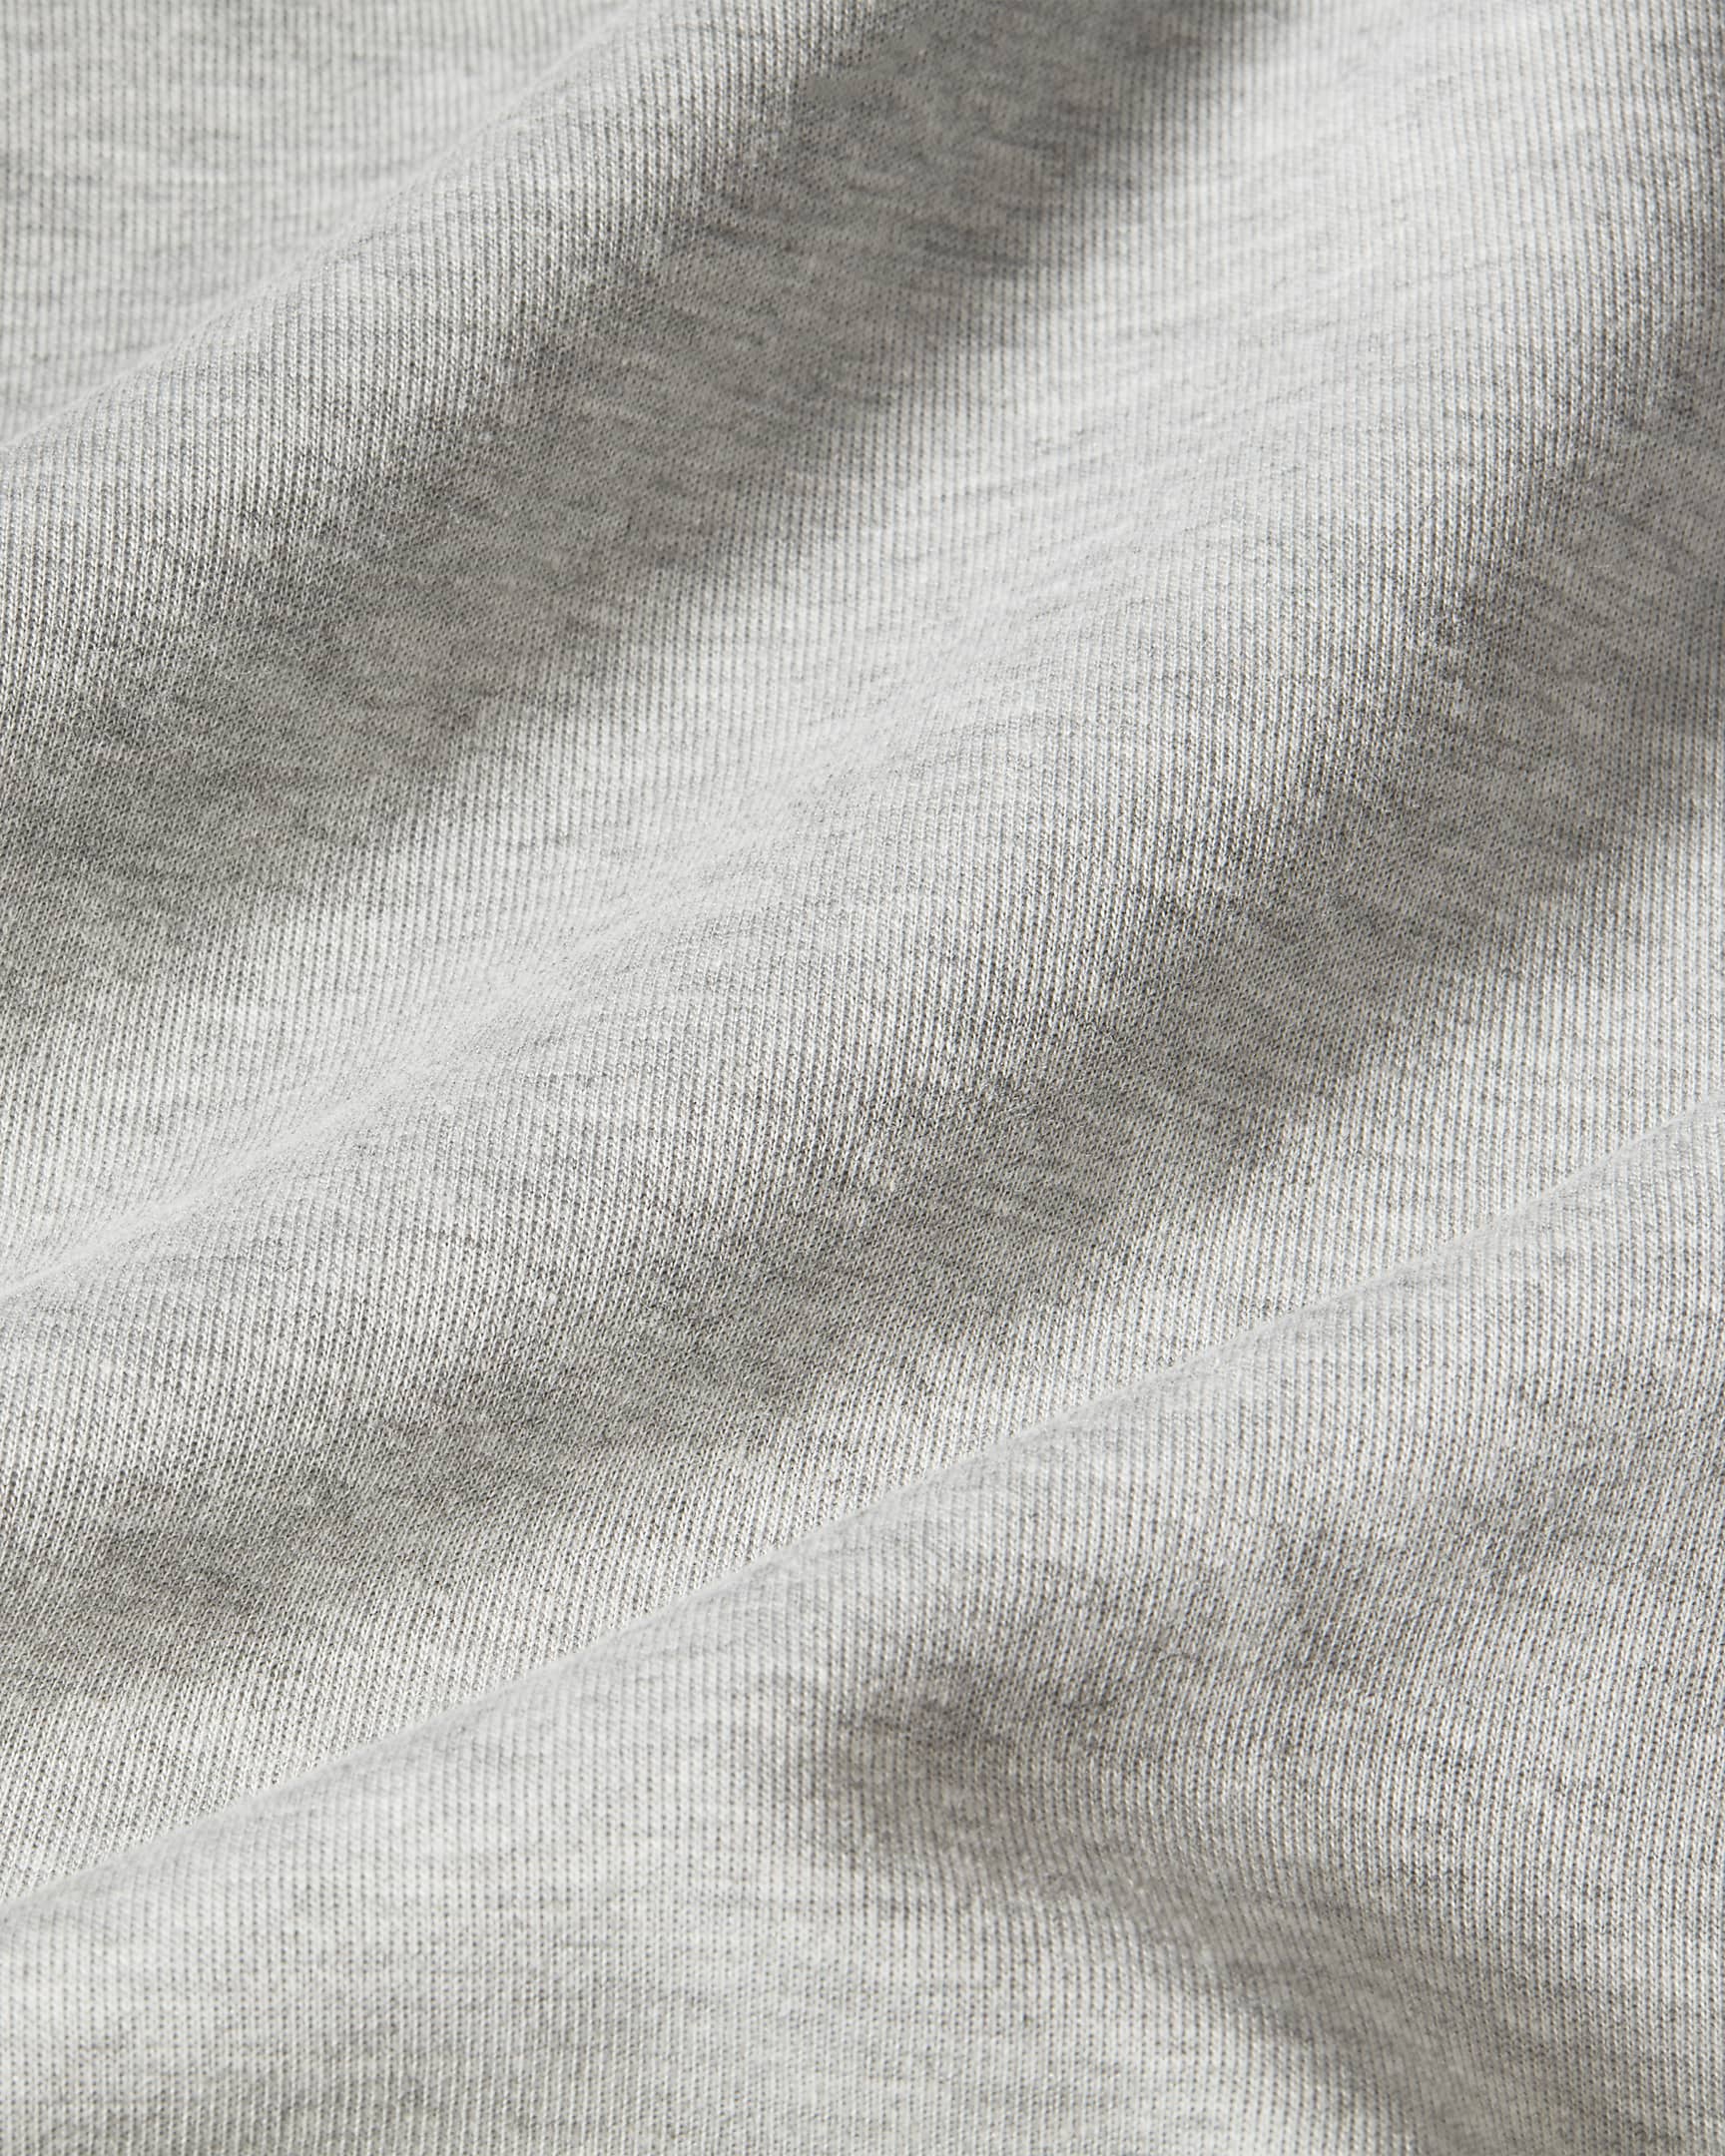 Pantalon Nike Sportswear Tech Fleece pour Garçon plus âgé - Dark Grey Heather/Noir/Noir